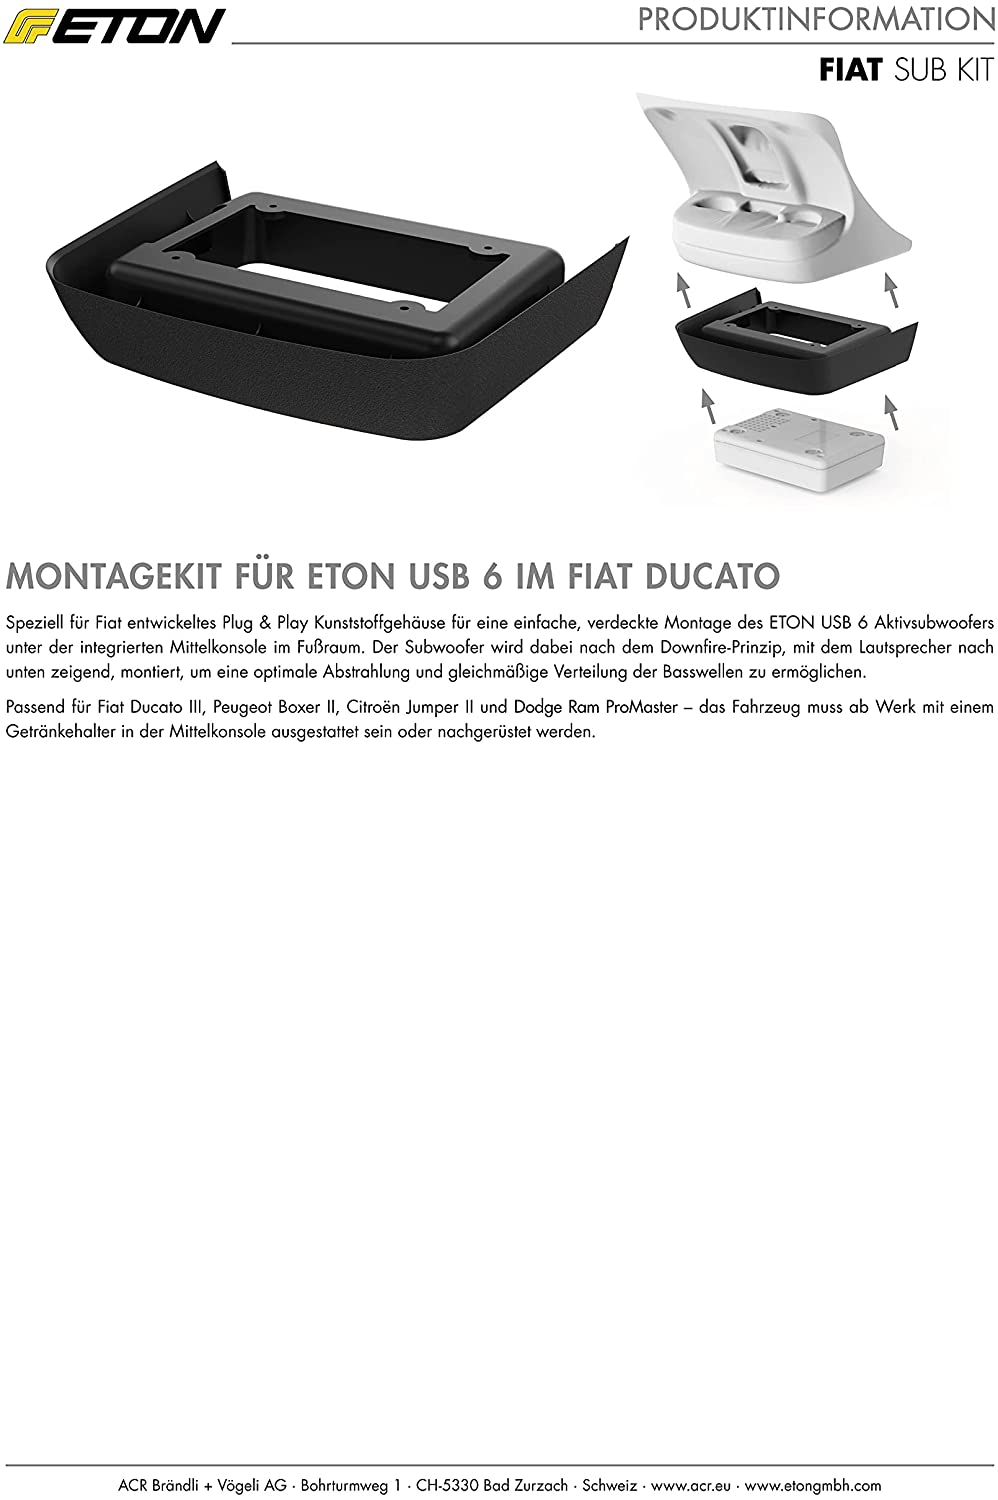 ETON FIAT-SUB Upgrade FIAT Ducato, Peugeot Boxer, Citroën Jumper, Dodge Ram USB6 Montagekit FIAT SUB KIT